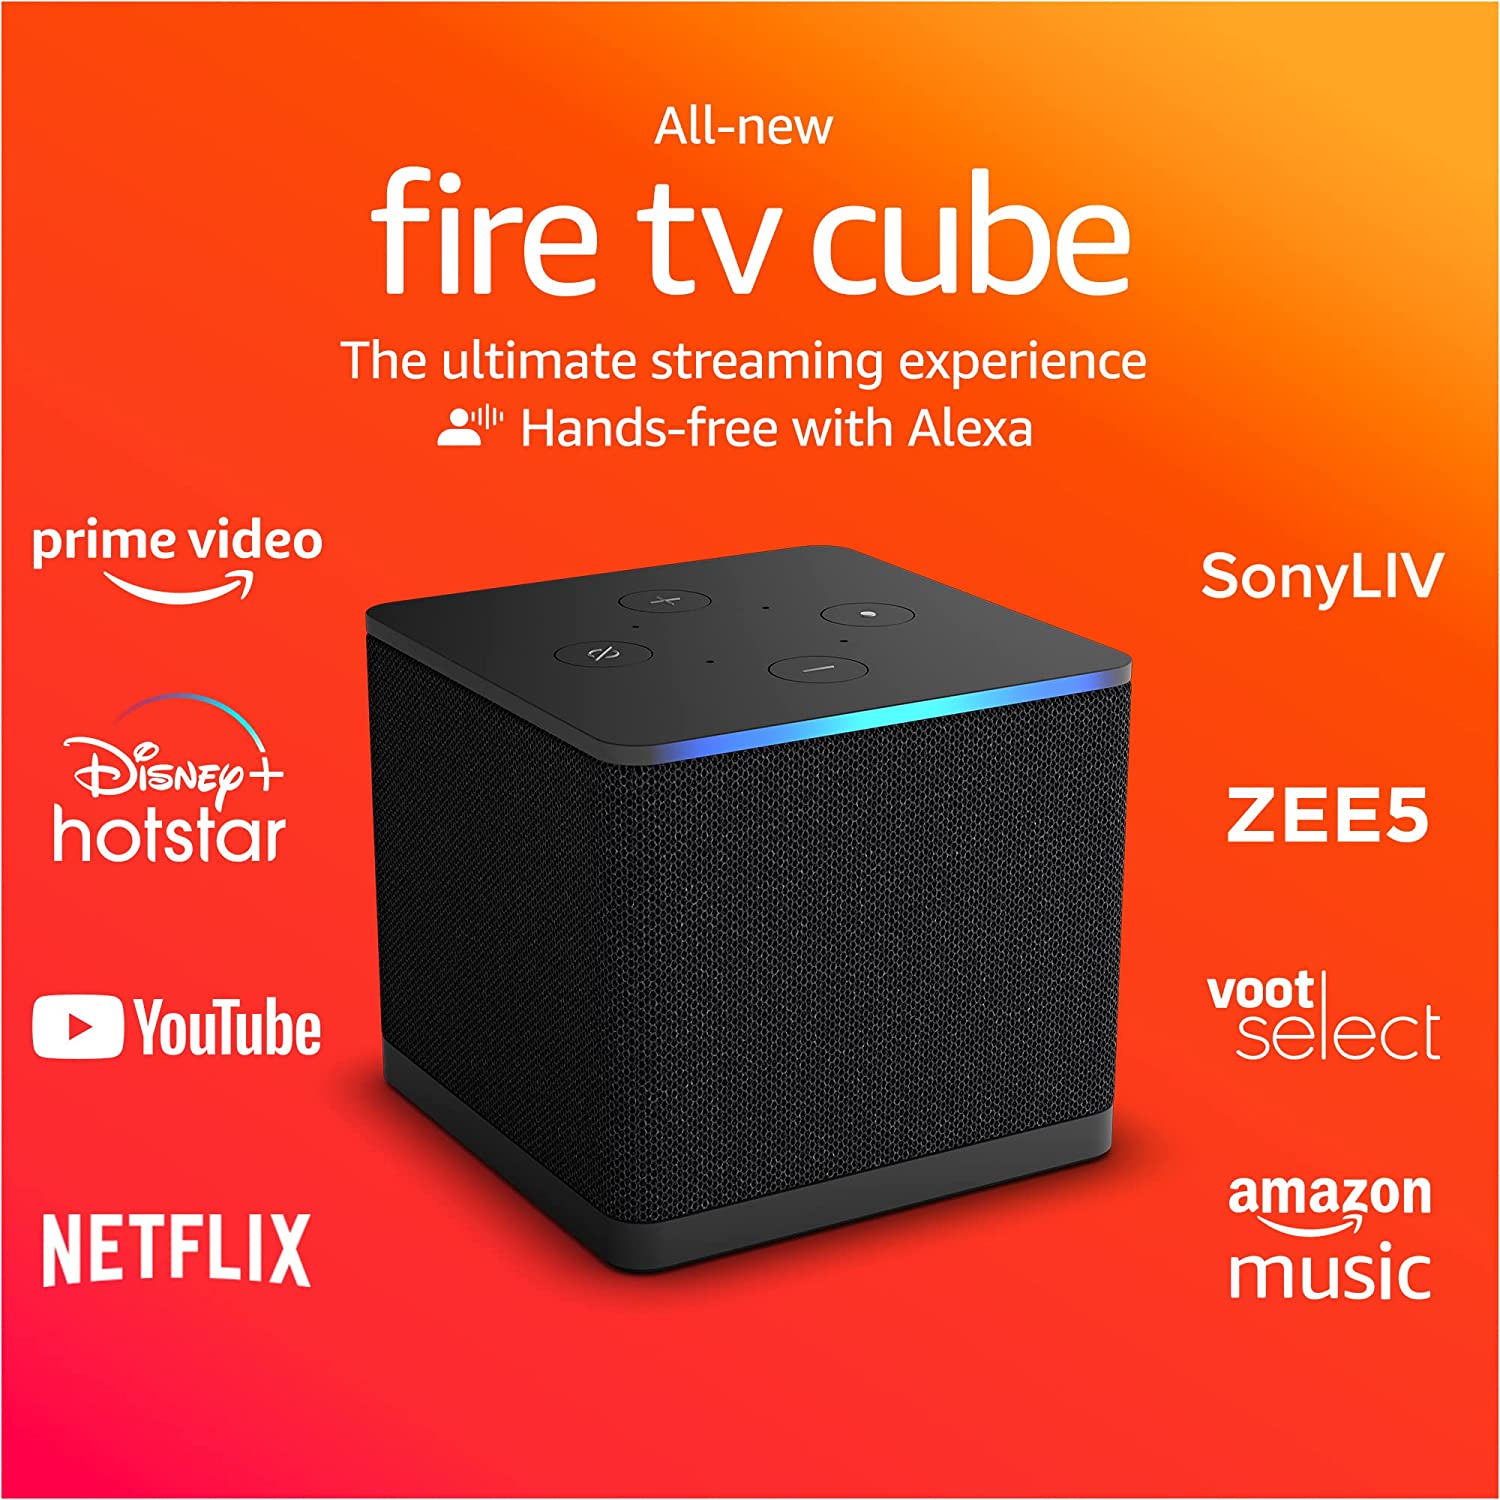 टीवी देखने का एक्सपीरियेंस ही बदल देगा ये Fire TV Cube, सिर्फ 1 डिवाइस से हो जायेंगे सारे काम